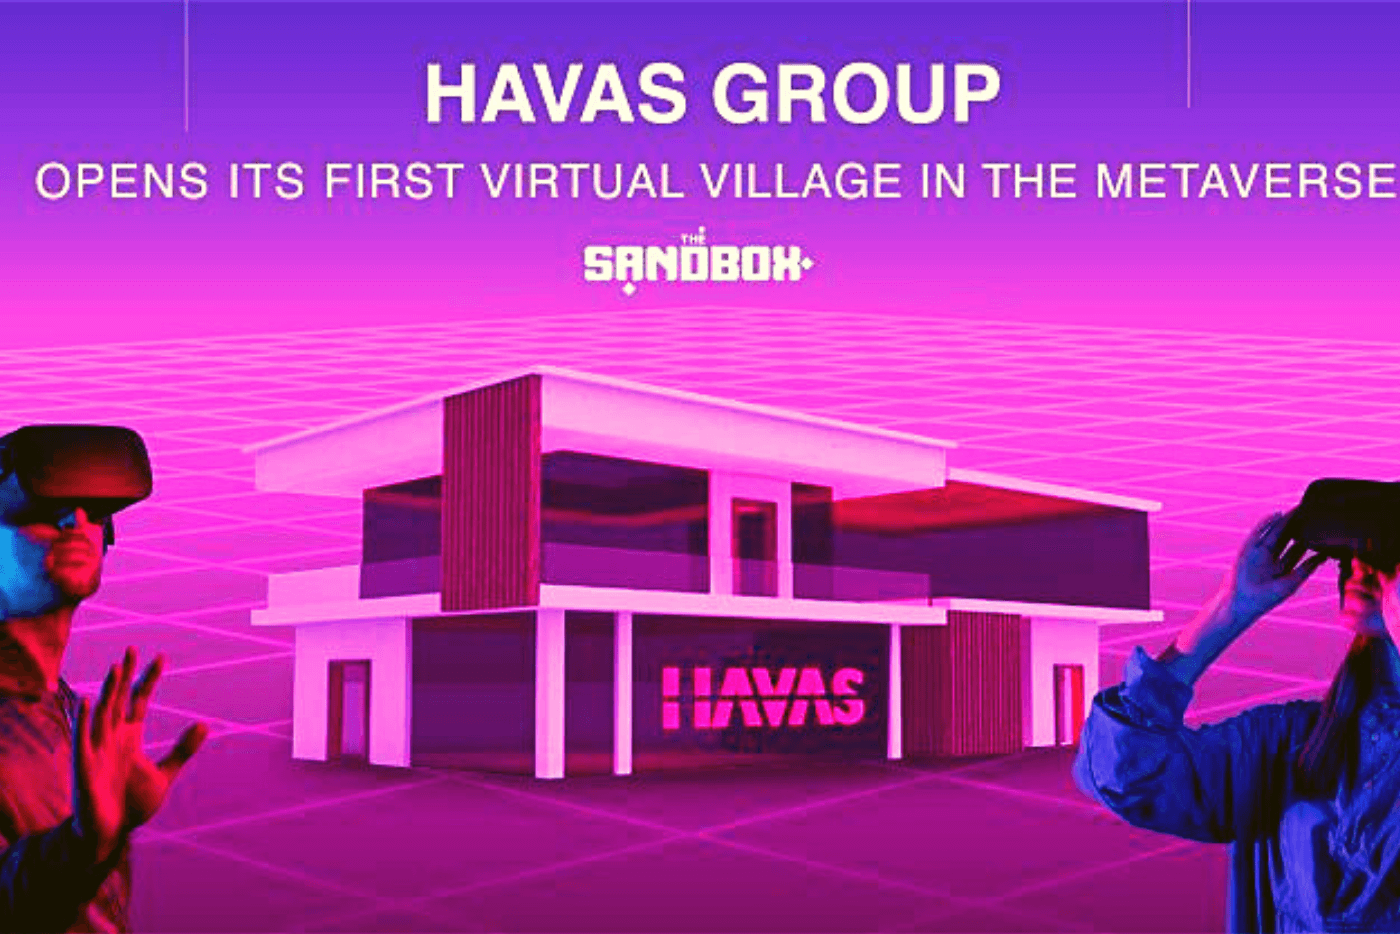 The Havas Group Metaverse